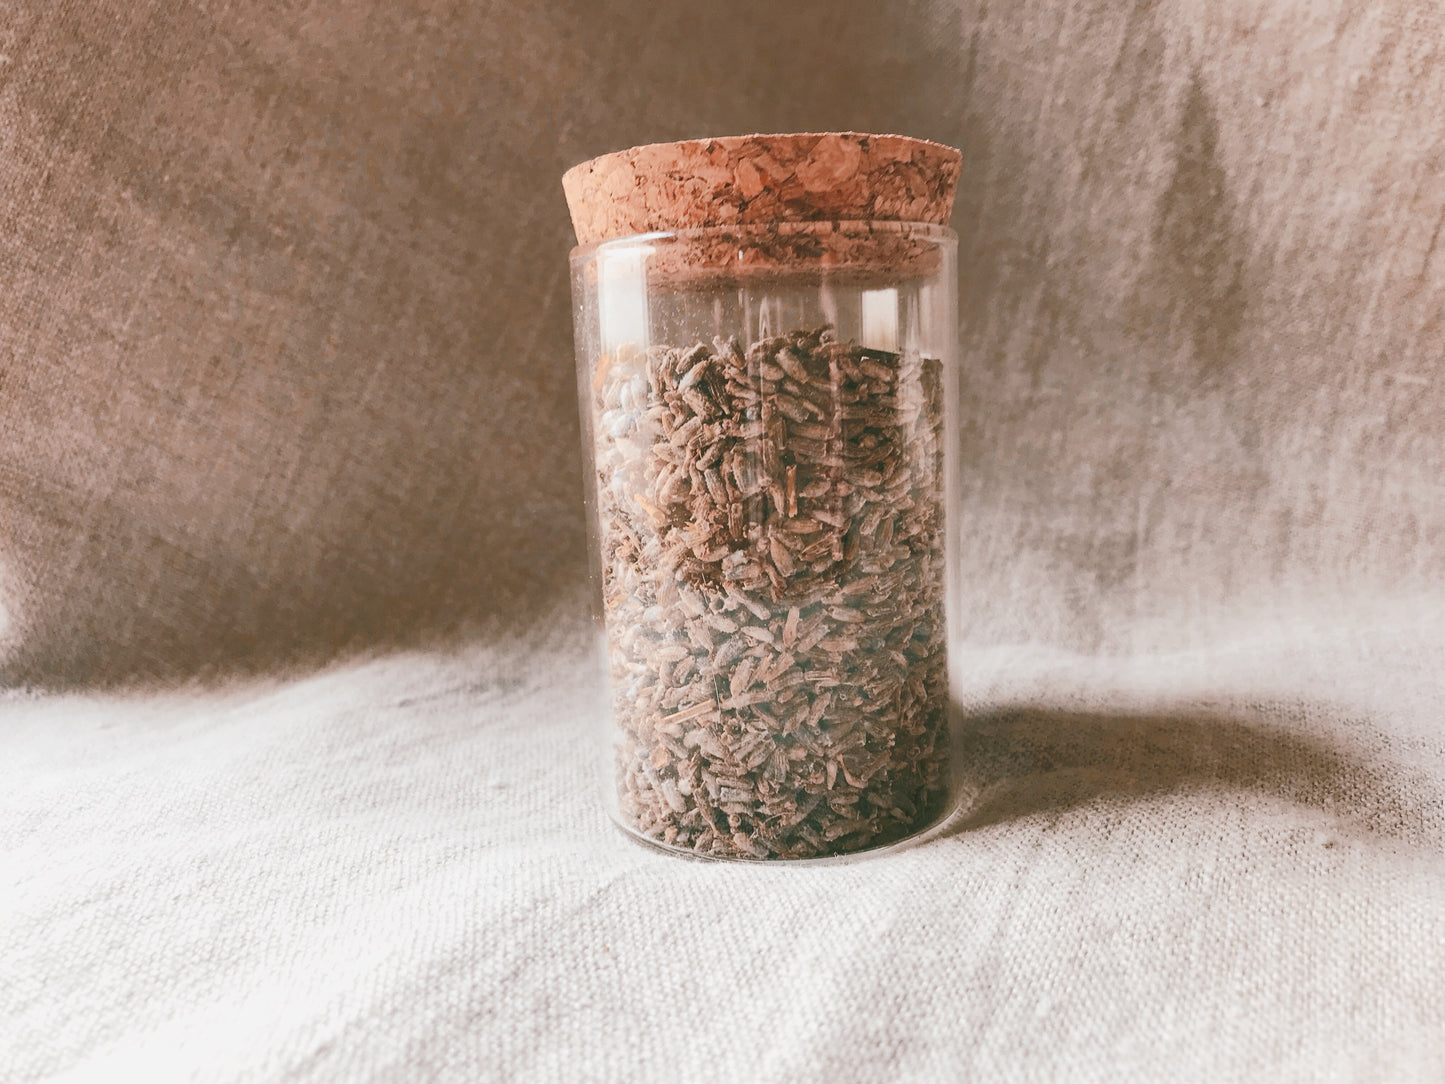 Lavender Medicine Jar